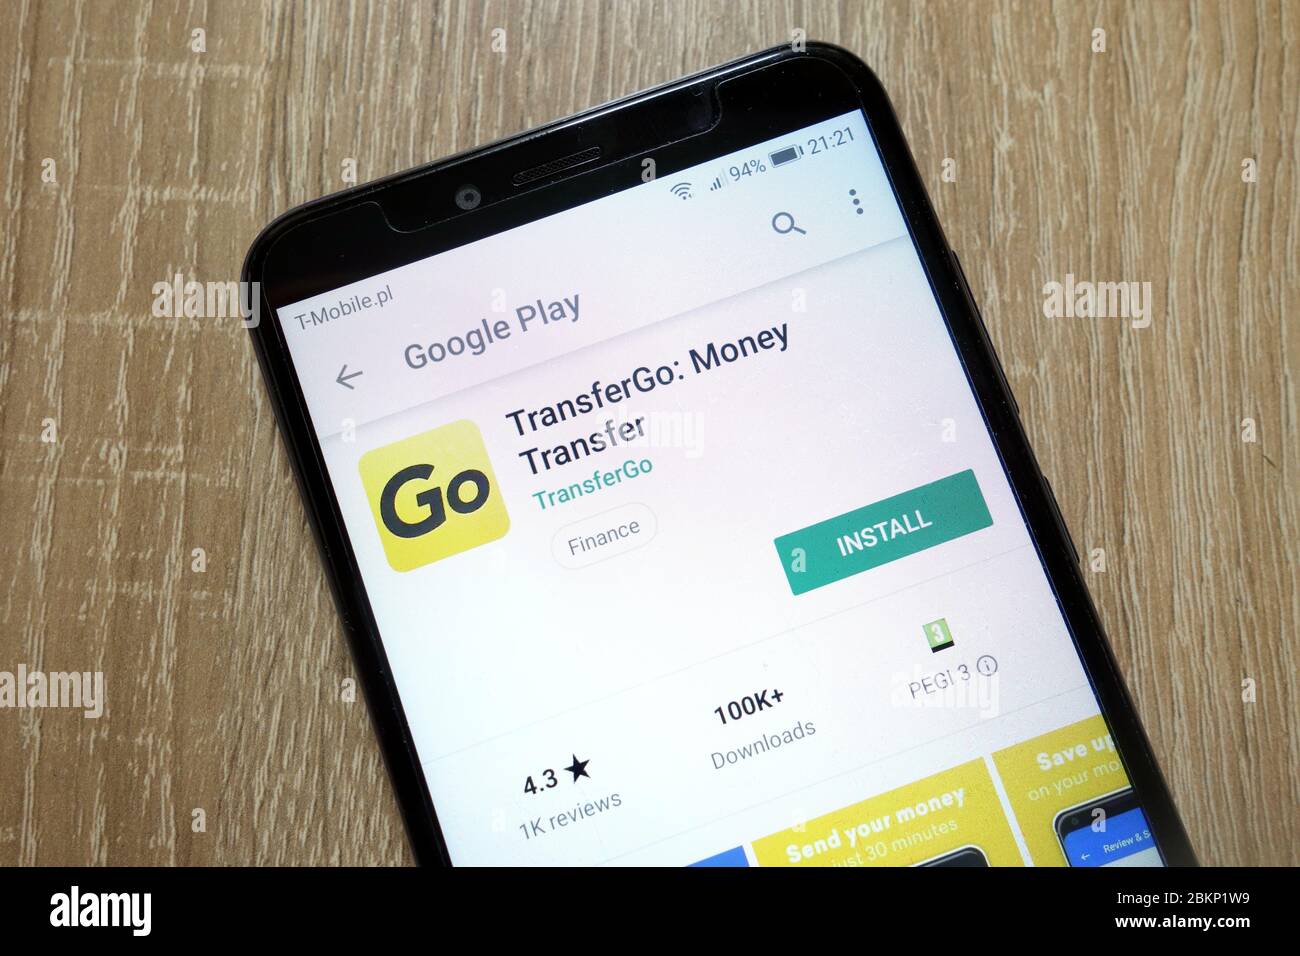 TransferGo : application de transfert d'argent sur le site Web Google Play Store affiché sur le smartphone Banque D'Images